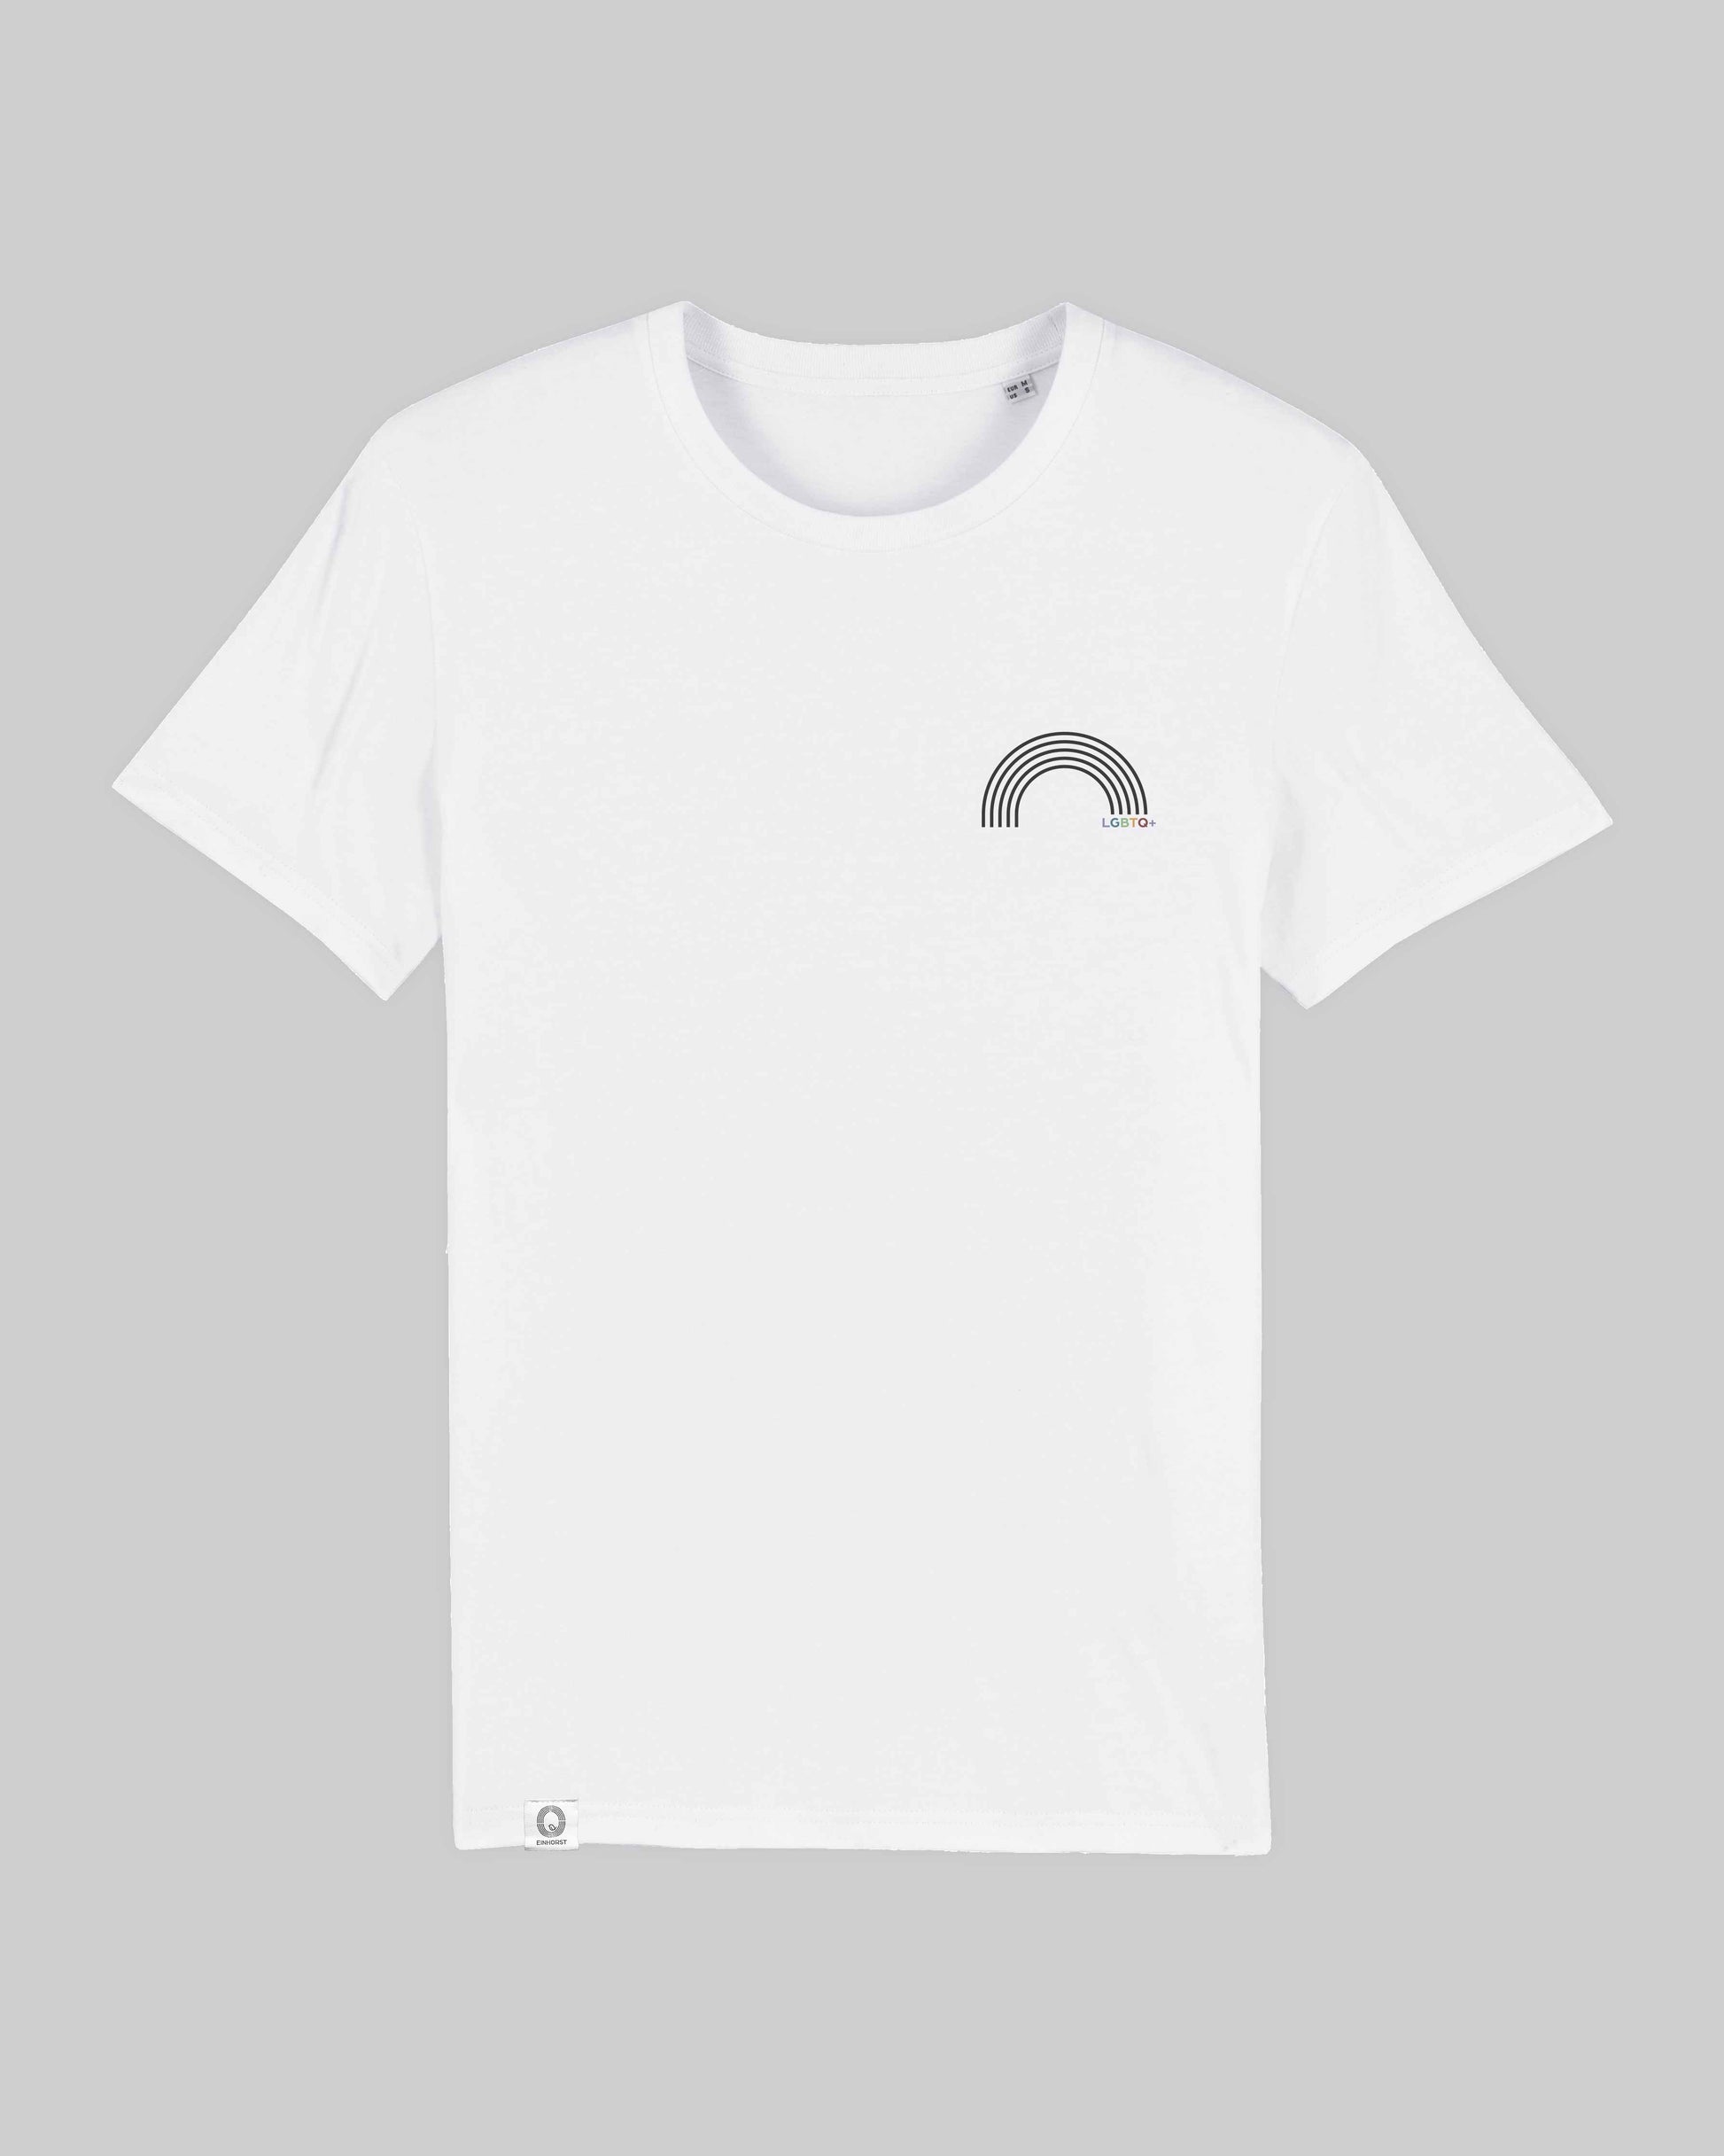 EINHORST® unisex Organic Shirt in Weiß mit dem Motiv "lgbtq+ Regenbogen" in der Kombination schwarzer Regenbogen mit bunter Schrift, Bild von Shirt von vorne